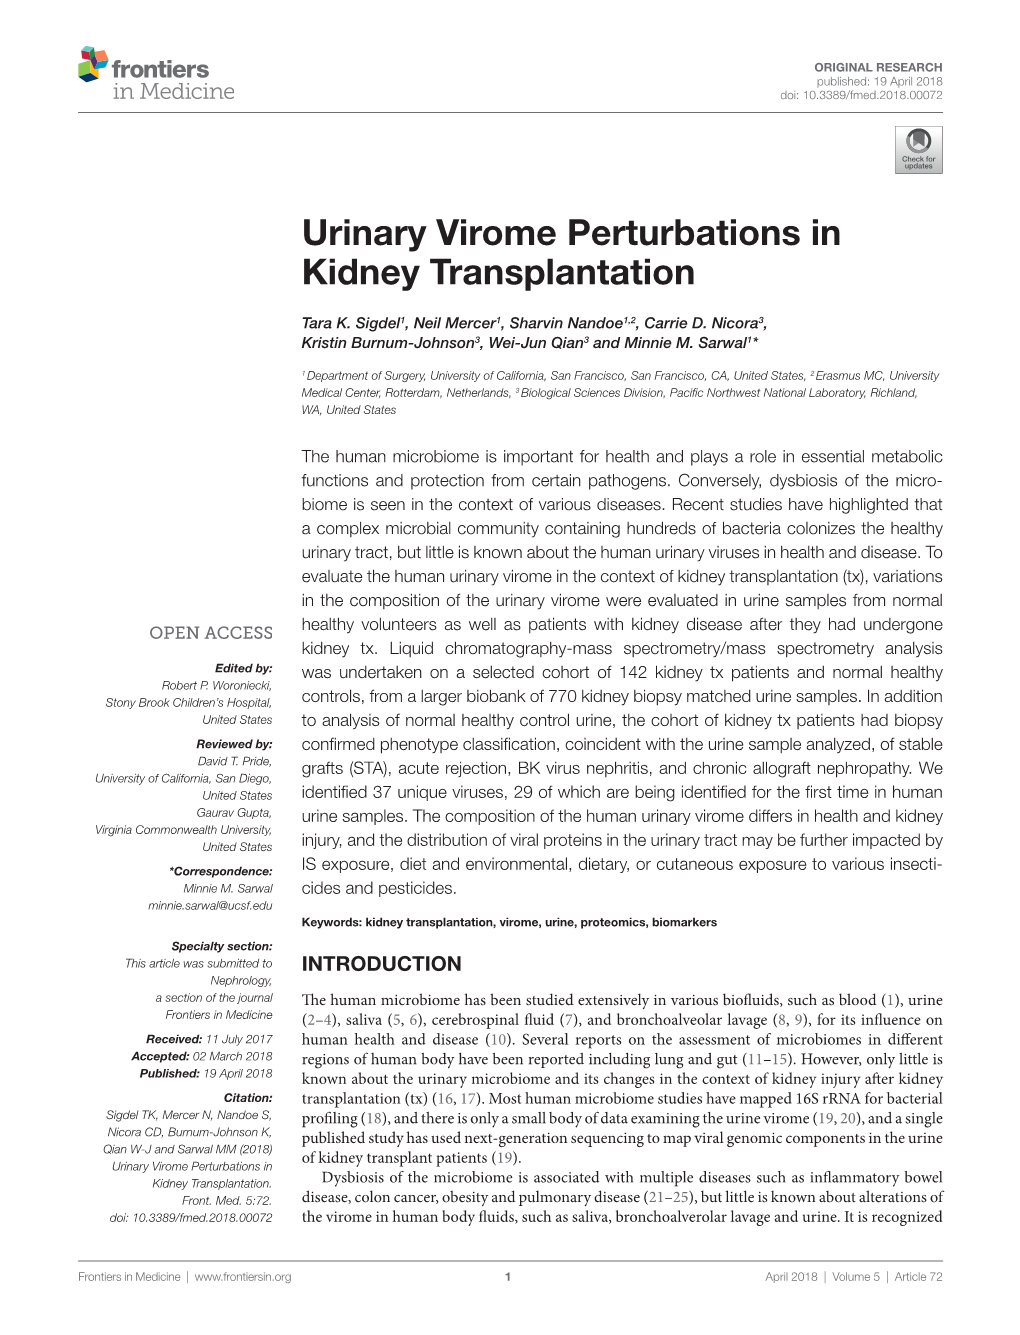 Urinary Virome Perturbations in Kidney Transplantation